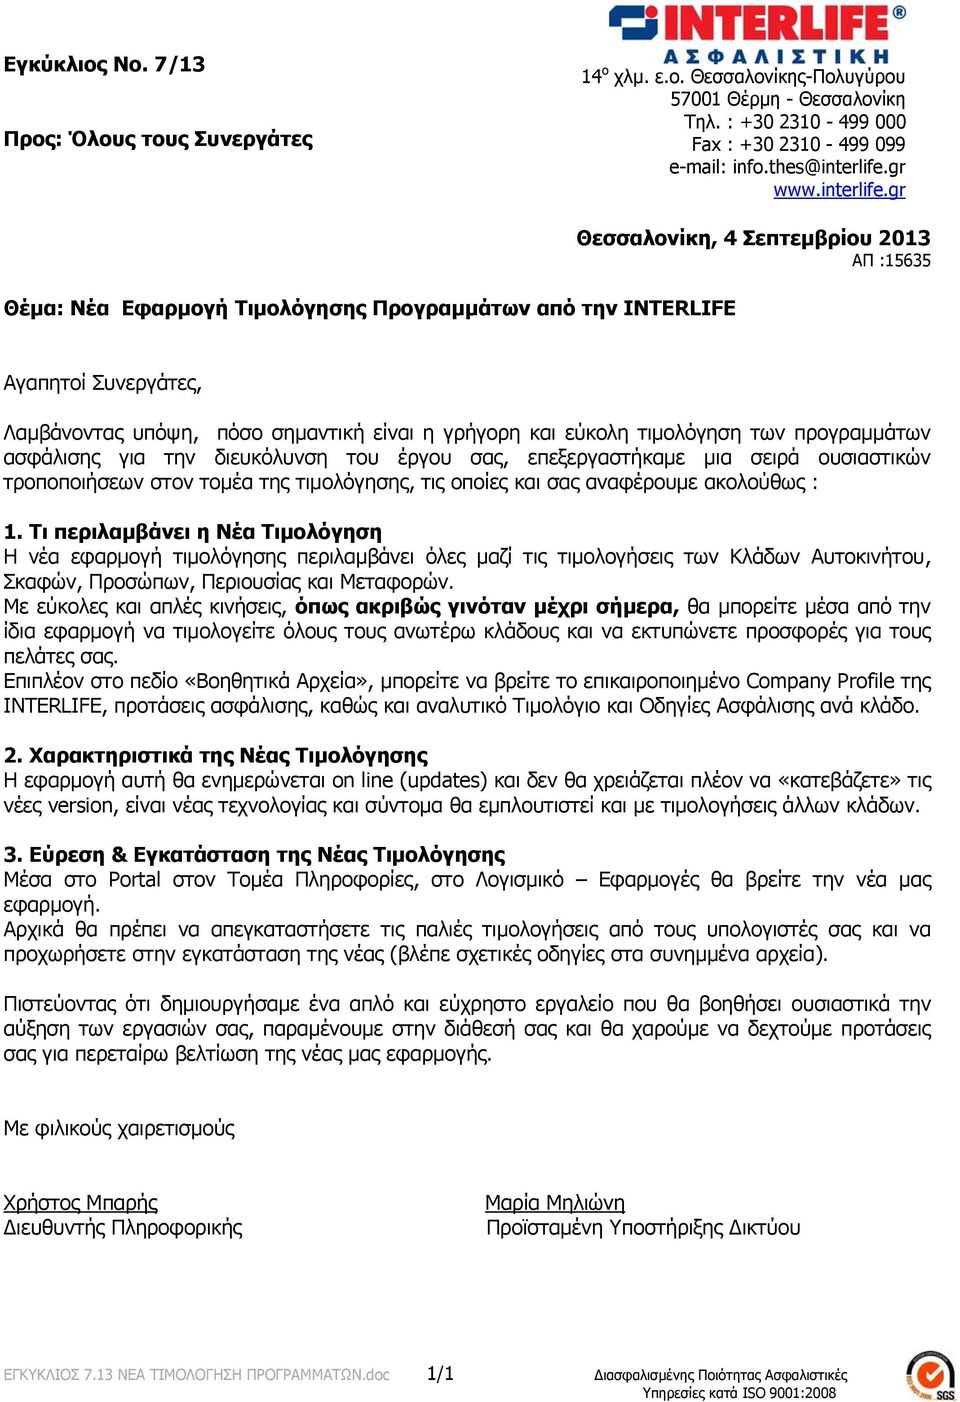 gr Θέμα: Νέα Εφαρμογή Τιμολόγησης Προγραμμάτων από την INTERLIFE Θεσσαλονίκη, 4 Σεπτεμβρίου 2013 ΑΠ :15635 Αγαπητοί Συνεργάτες, Λαμβάνοντας υπόψη, πόσο σημαντική είναι η γρήγορη και εύκολη τιμολόγηση